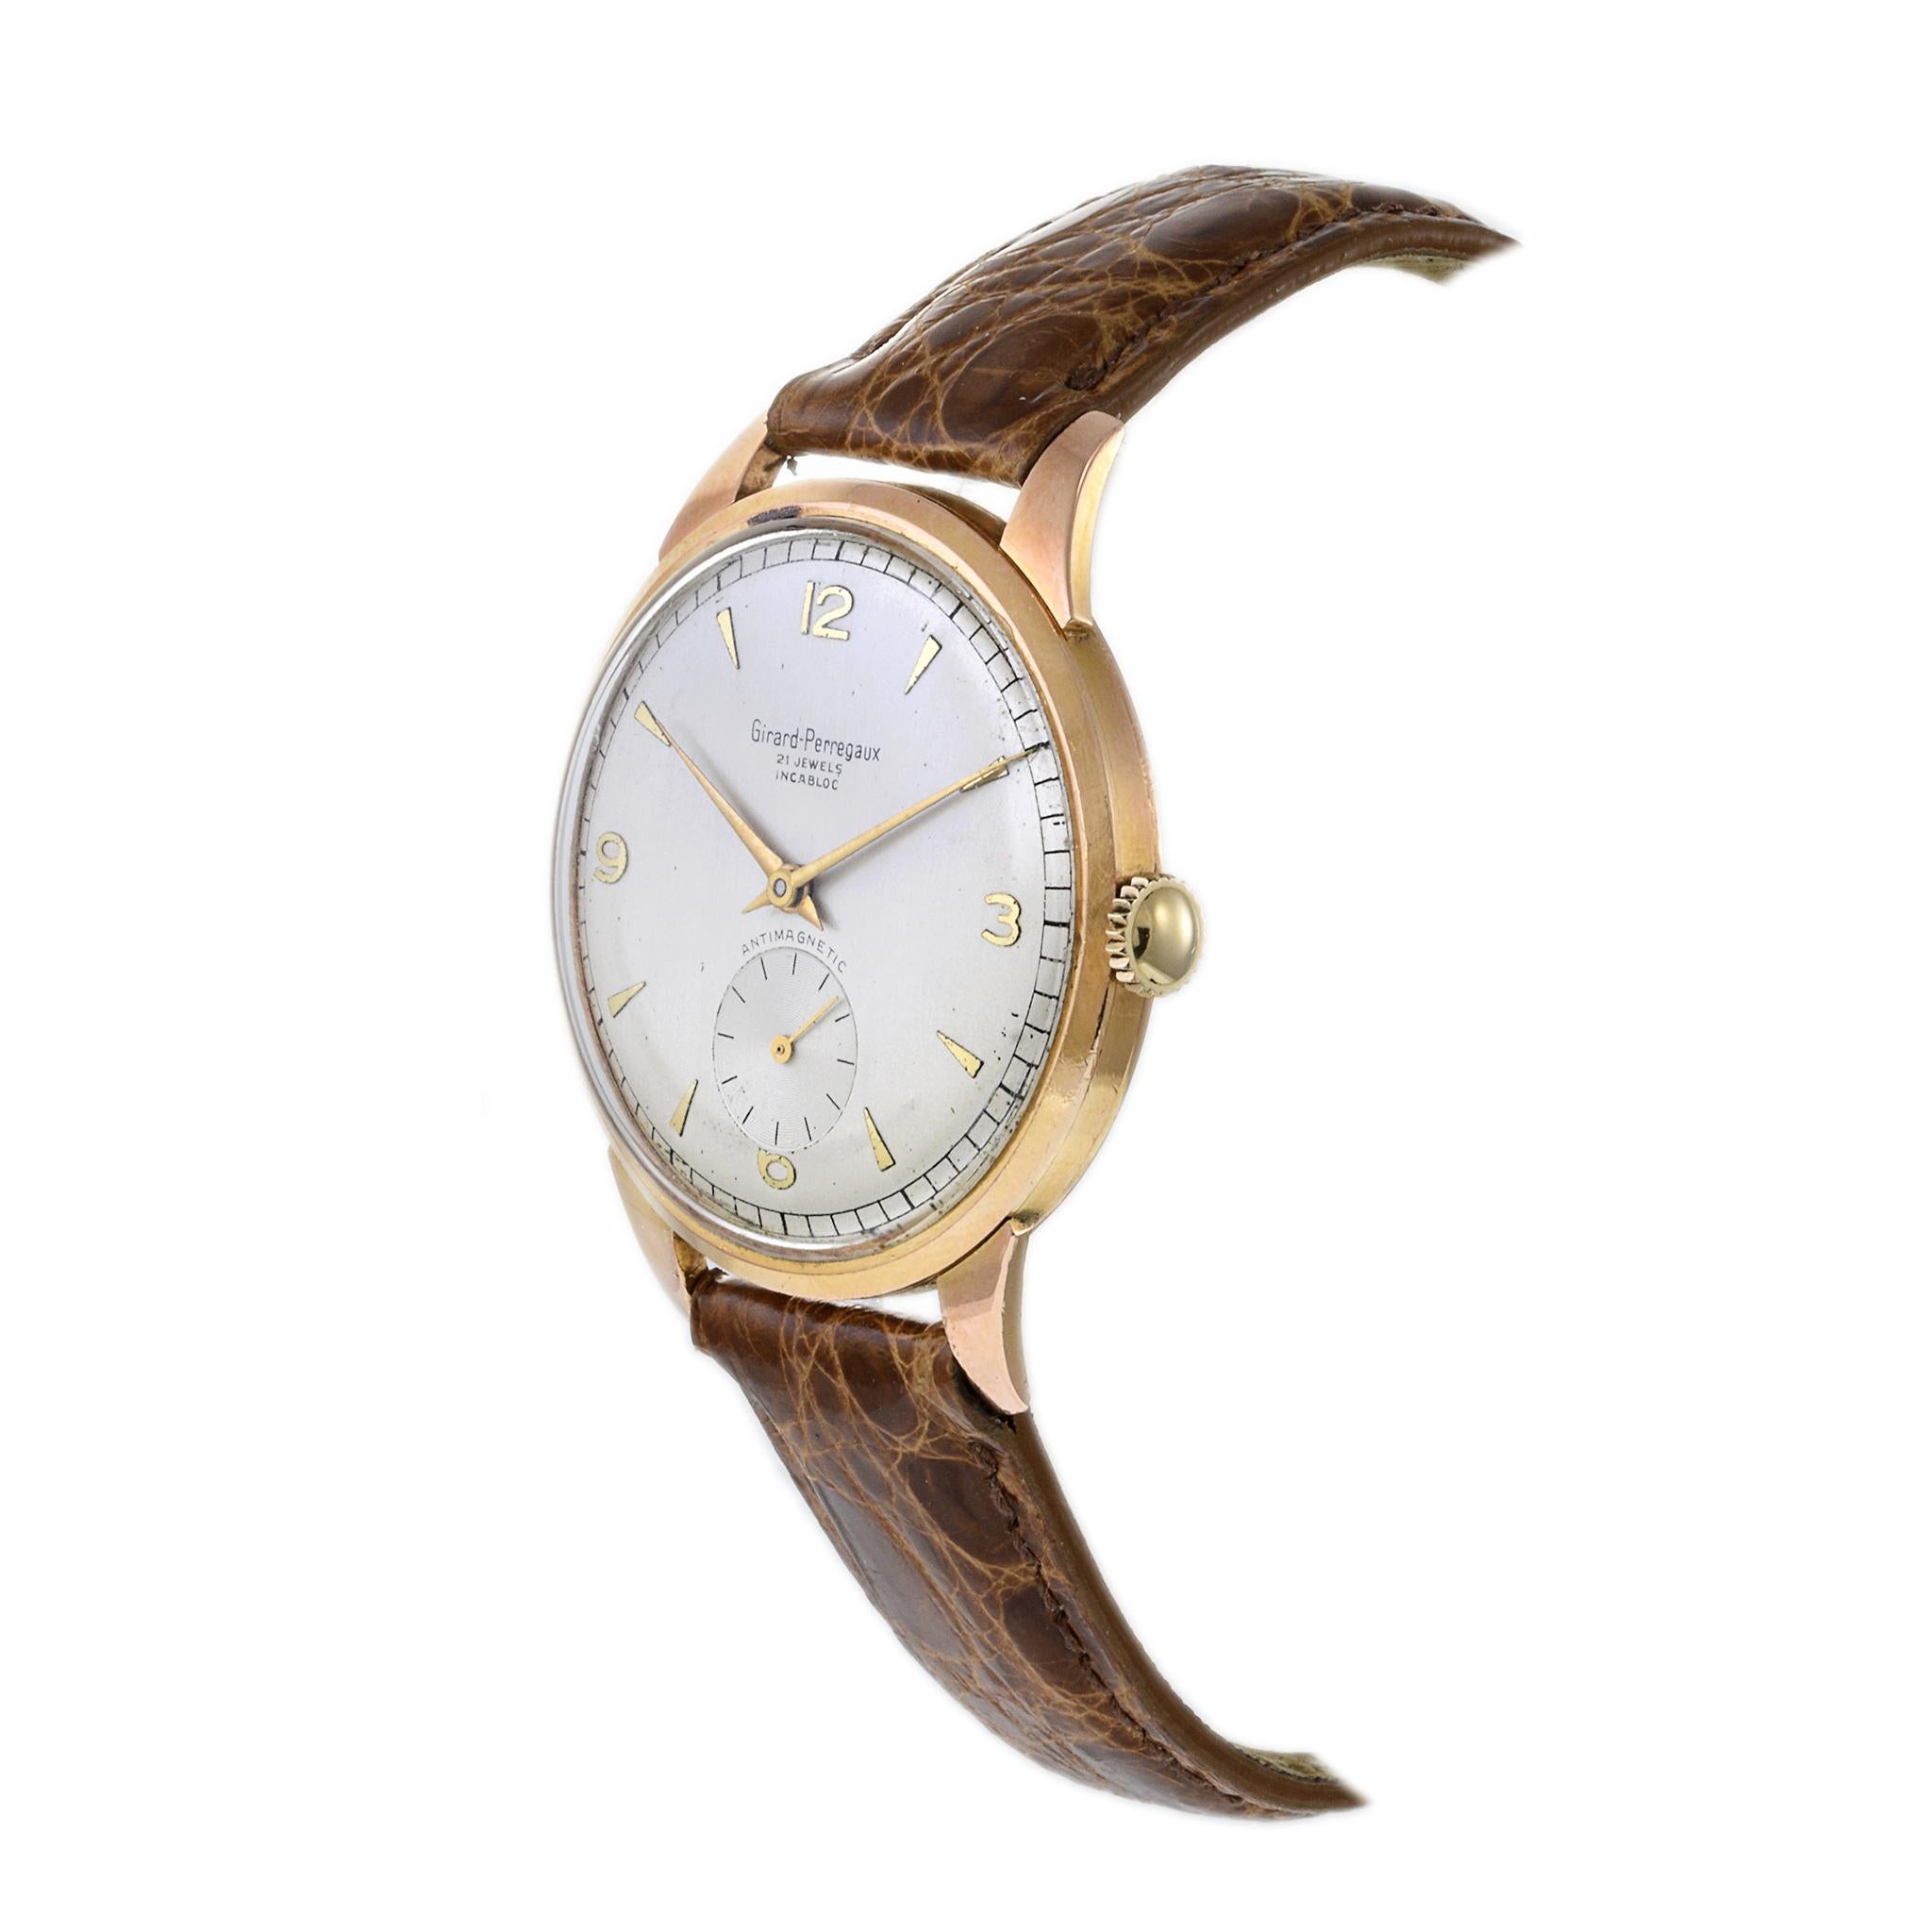 VINTAGE 1950'S GIRARD-PERREGAUX Calatrava 38MM 18KT ROSENGOLD-GEHÄUSE, silbernes ZIFFERBLATT MIT PFEIL UND ARABISCHEN MARKIERUNGEN, UNTERZEITZEIGER ZWEITZEIG, HANDAUFZUG 21 JEWEL GP-Uhrwerk Kaliber 03B. Entdecken Sie mit dieser Uhr von